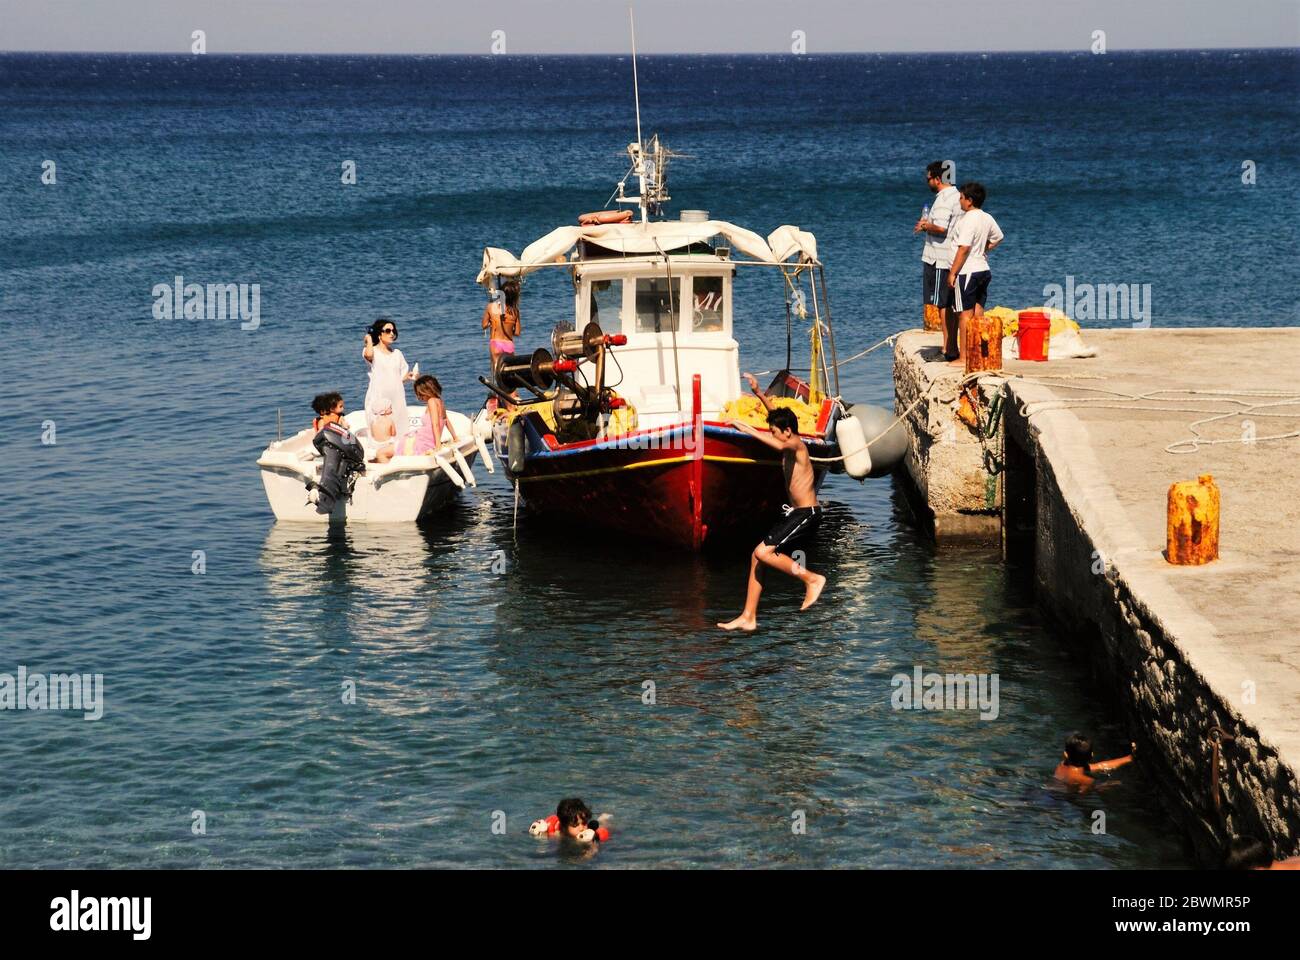 Grèce, île de Karpathos, gens ayant le temps de rafraîchissement au port de Diafani, août 16 2008. Banque D'Images